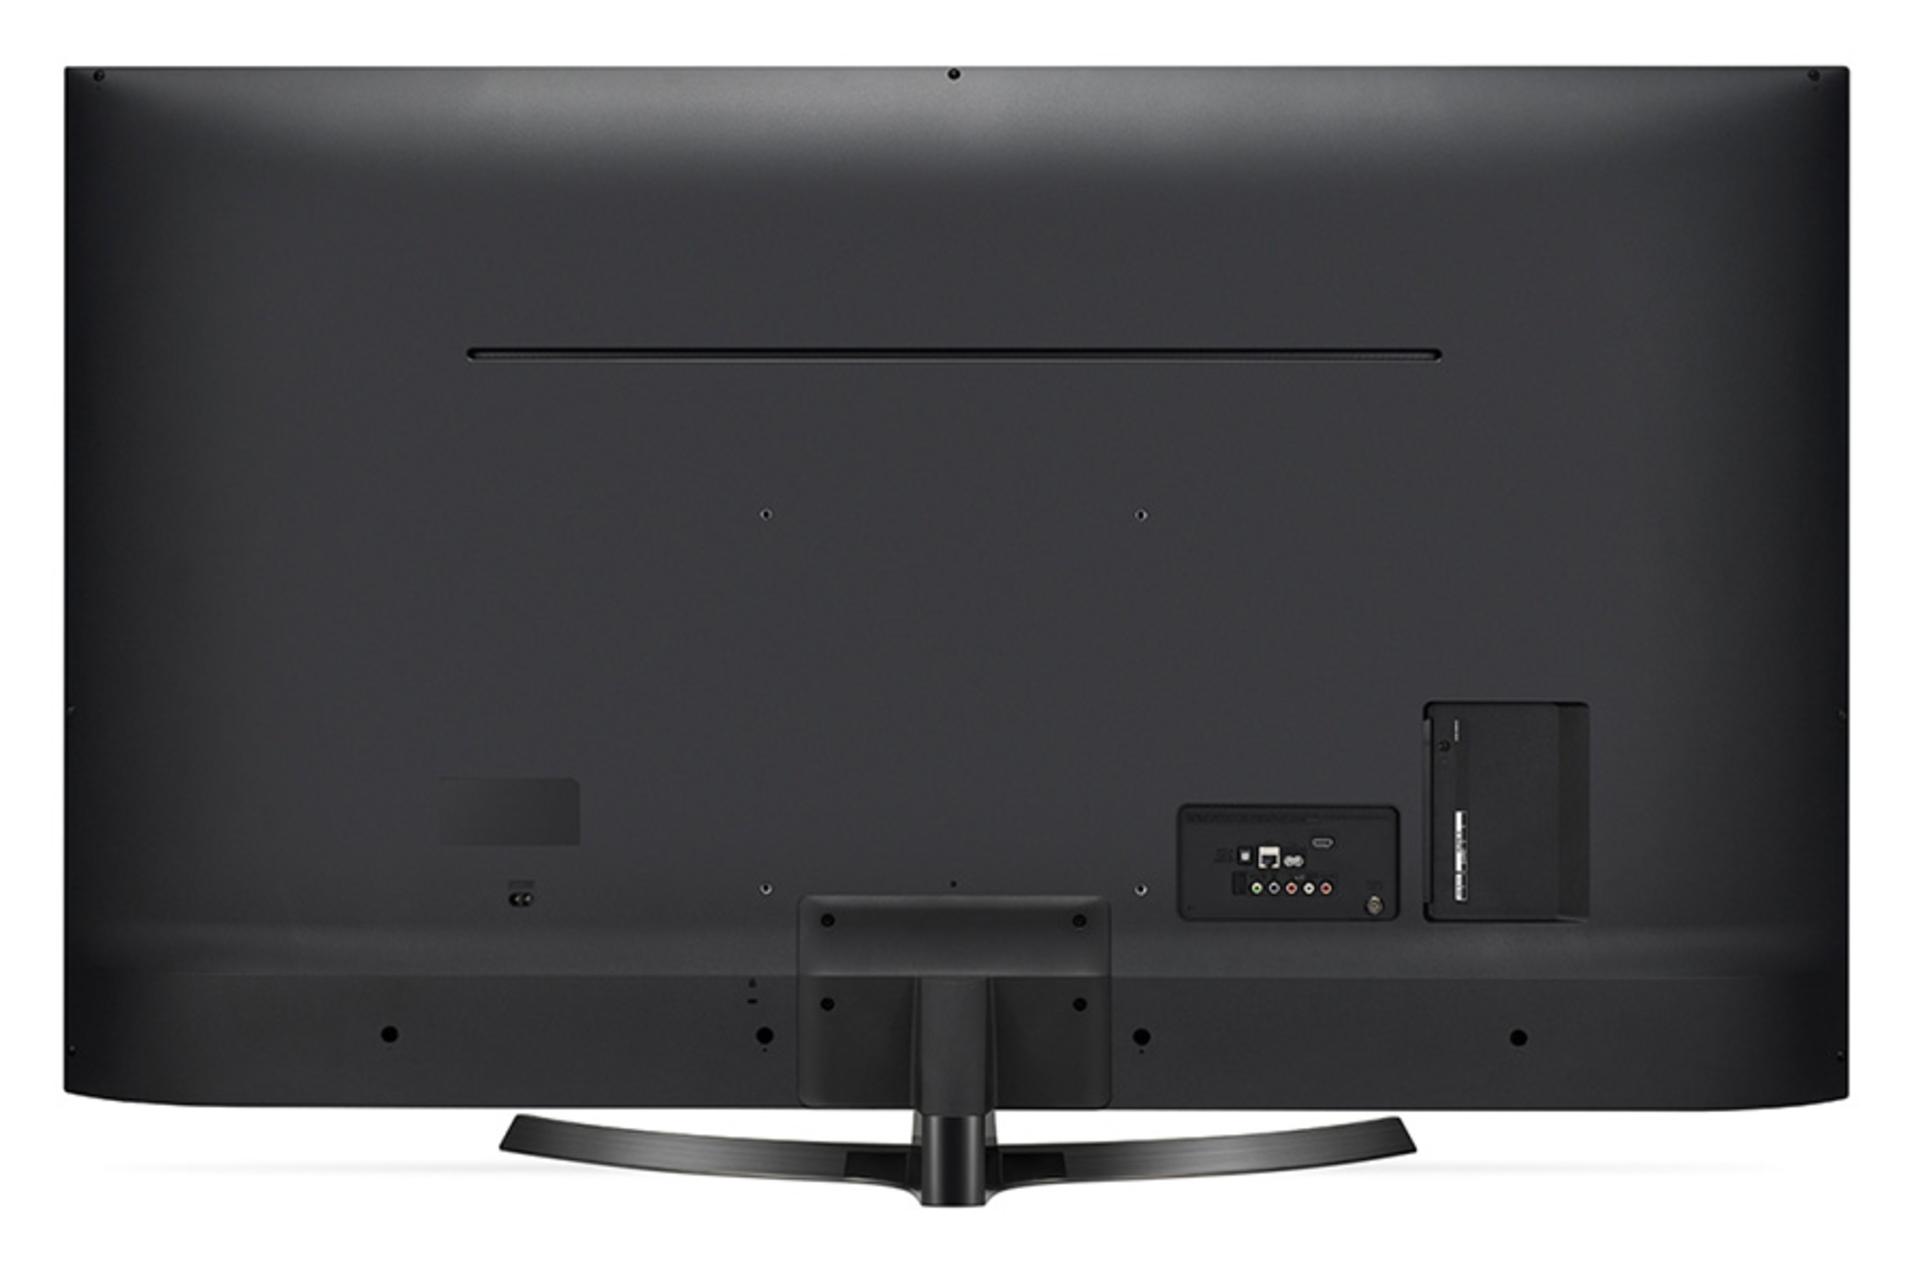 نمای پشت تلویزیون ال جی UK6400 مدل 65 اینچ و نمایش پورت ها